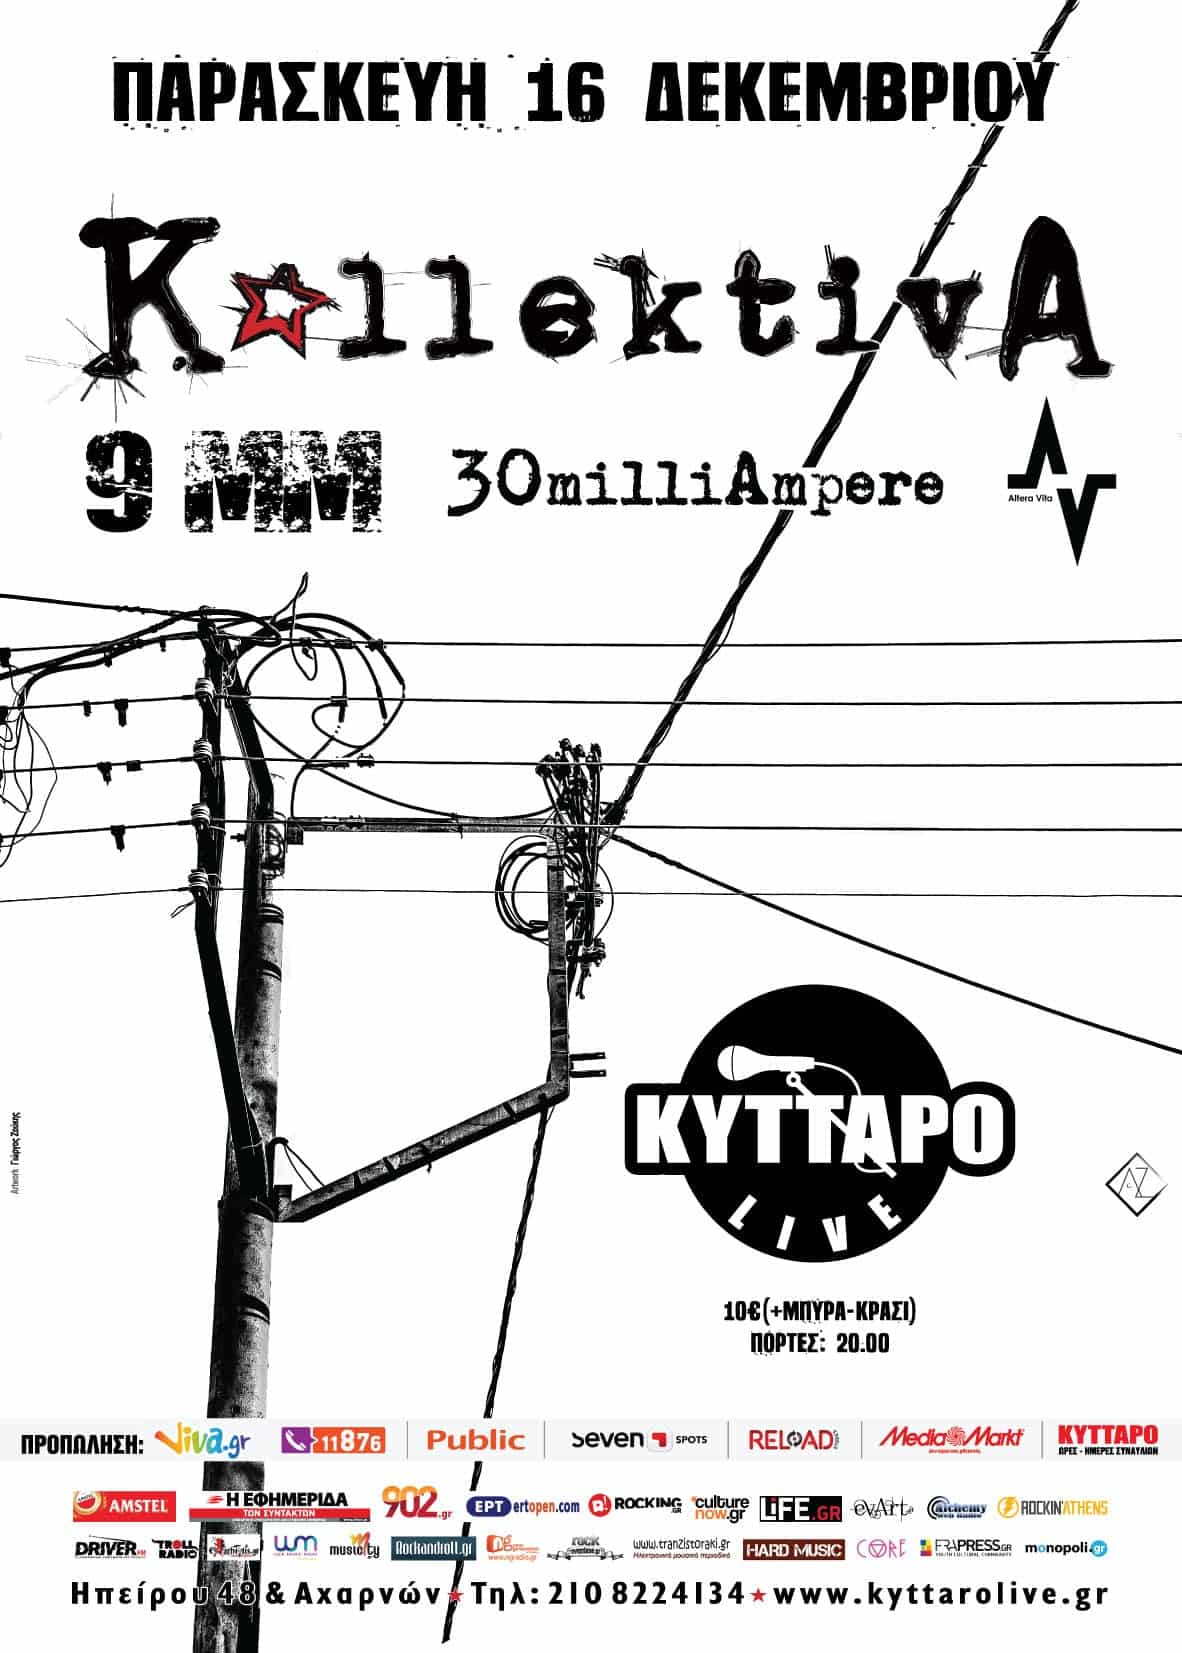 Kyttaro Kolectiva.cdr